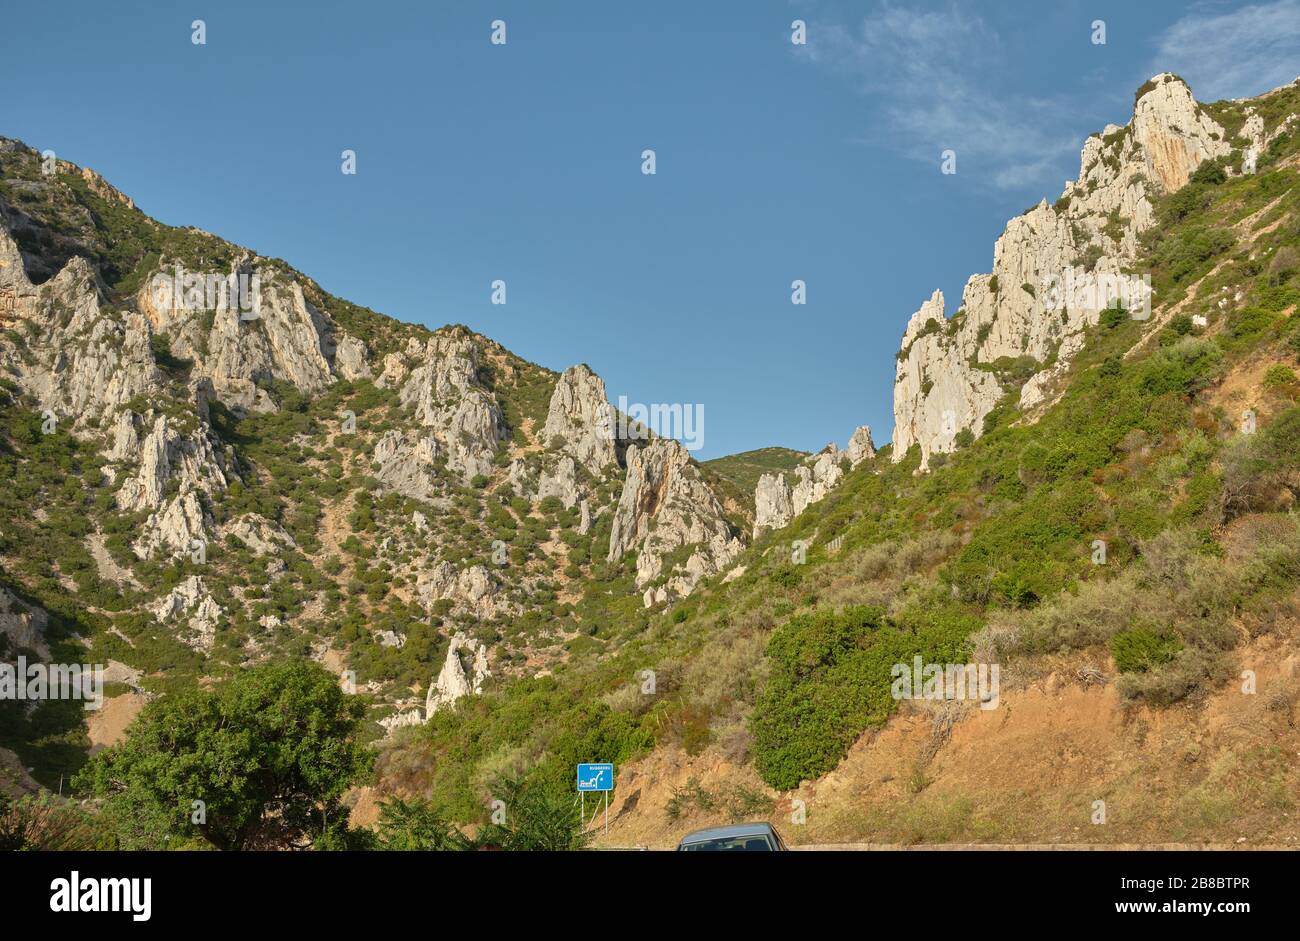 View on Buggerru mountains, coastal peaks in south Sardinia, Italy Stock Photo